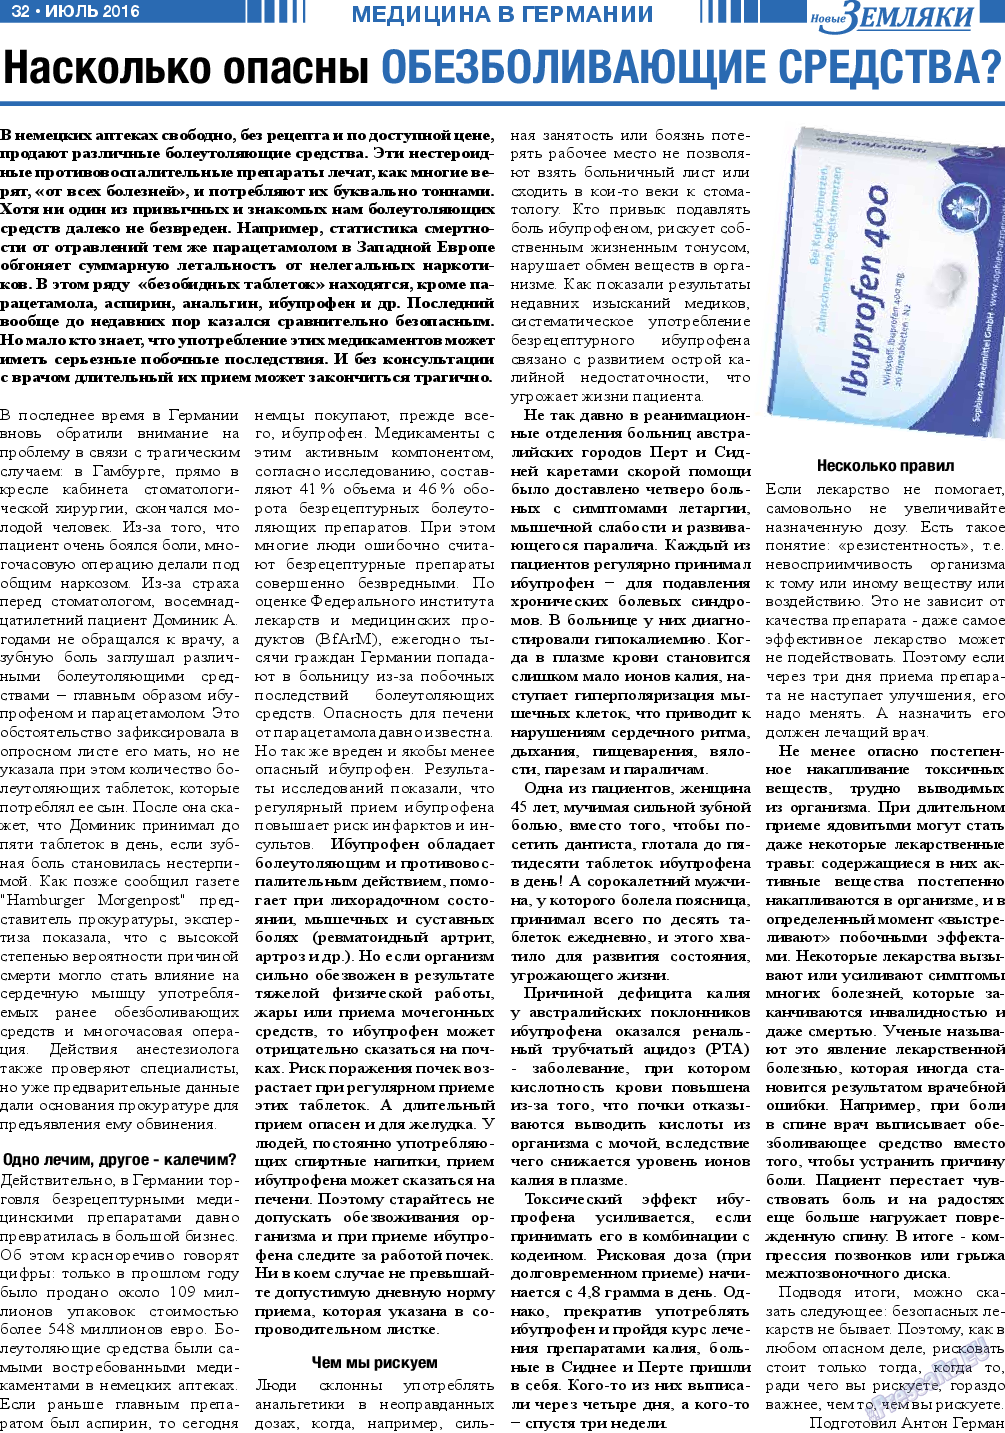 Новые Земляки, газета. 2016 №7 стр.32